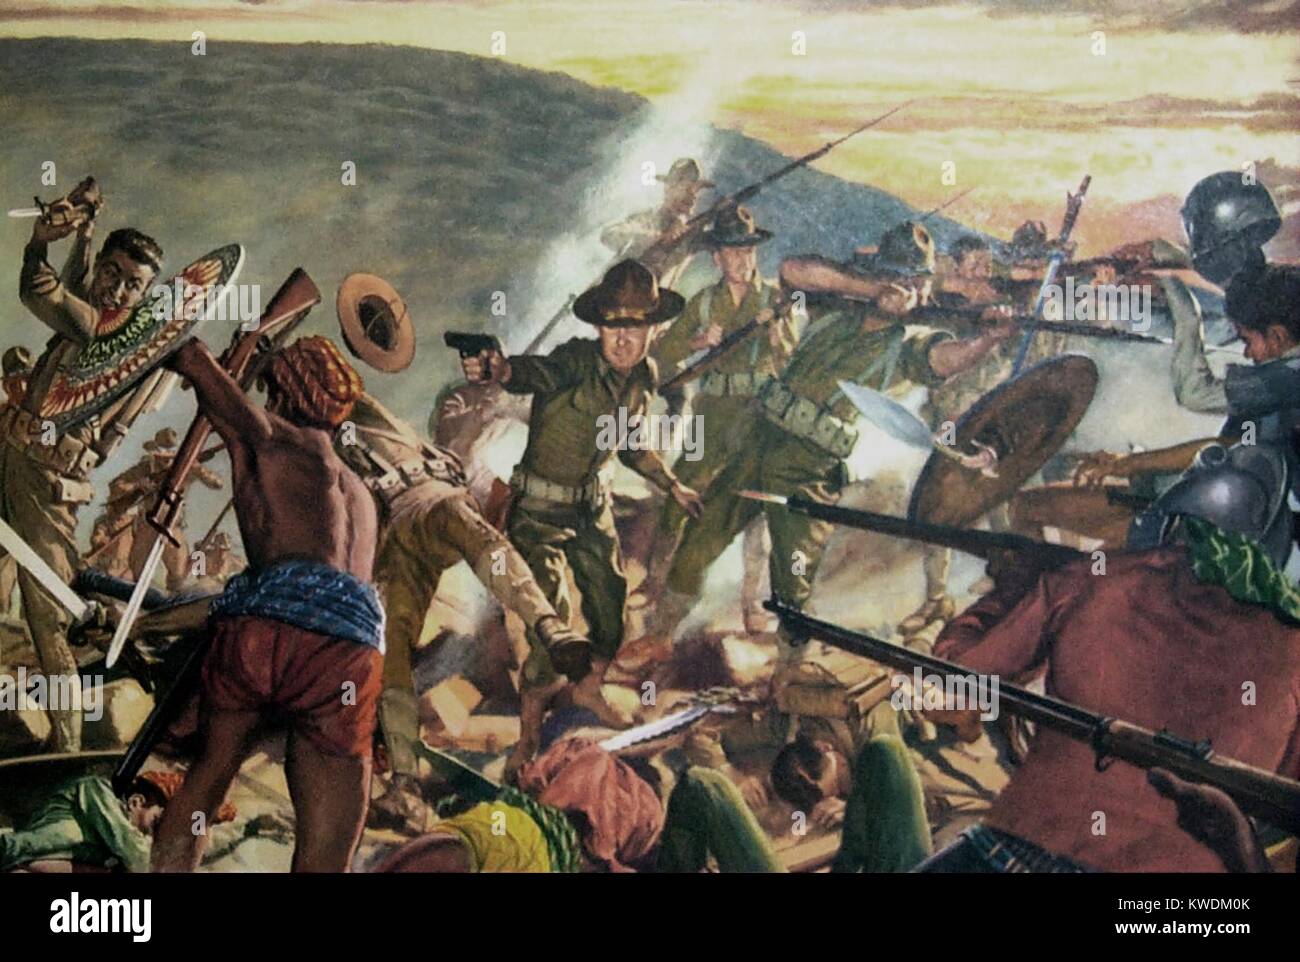 Bataille de Bagsak Mt., a eu lieu dans un cratère en forme de fer à cheval, 11-15 juin, 1913. C'était la dernière grande lutte dans la guerre Moro dans le sud des Philippines. Poster montre un soldat tirant la nouvelle armée américaine .pistolet de calibre 45, développé pour être un homme féroce contre la butée juramentados Moro. Peinture de H. Charles McBarron BSLOC (2017 10 100) Banque D'Images